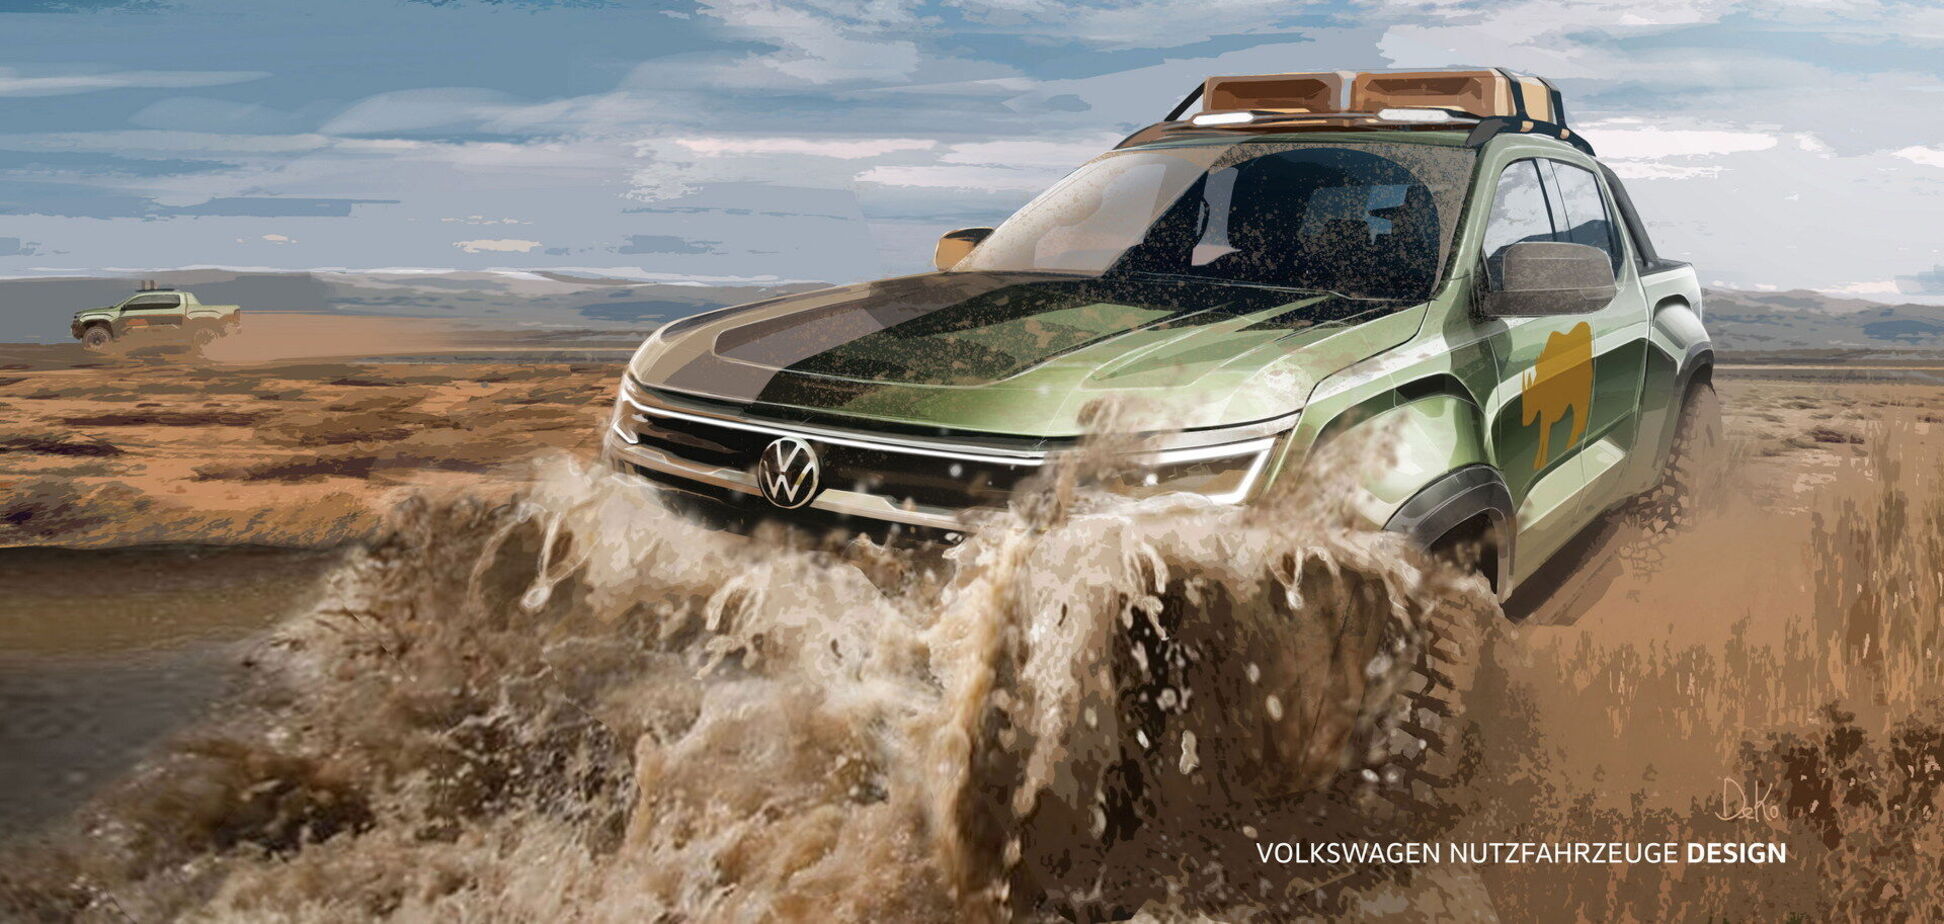 Volkswagen показала новые иллюстрации пикапа Amarok